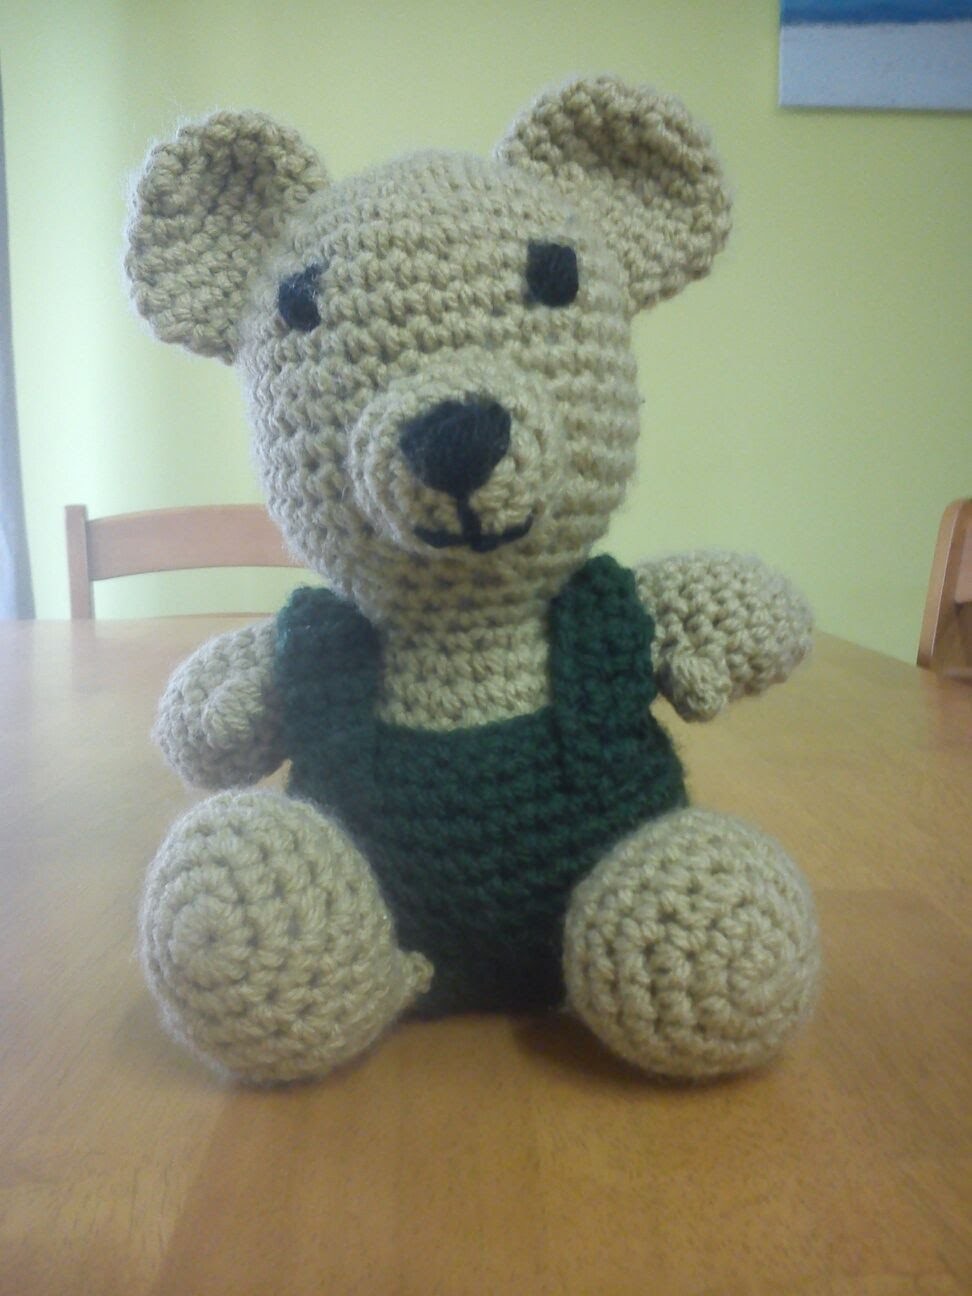 Háčkovaná hračka - medvídek -  1. část - crochet bear